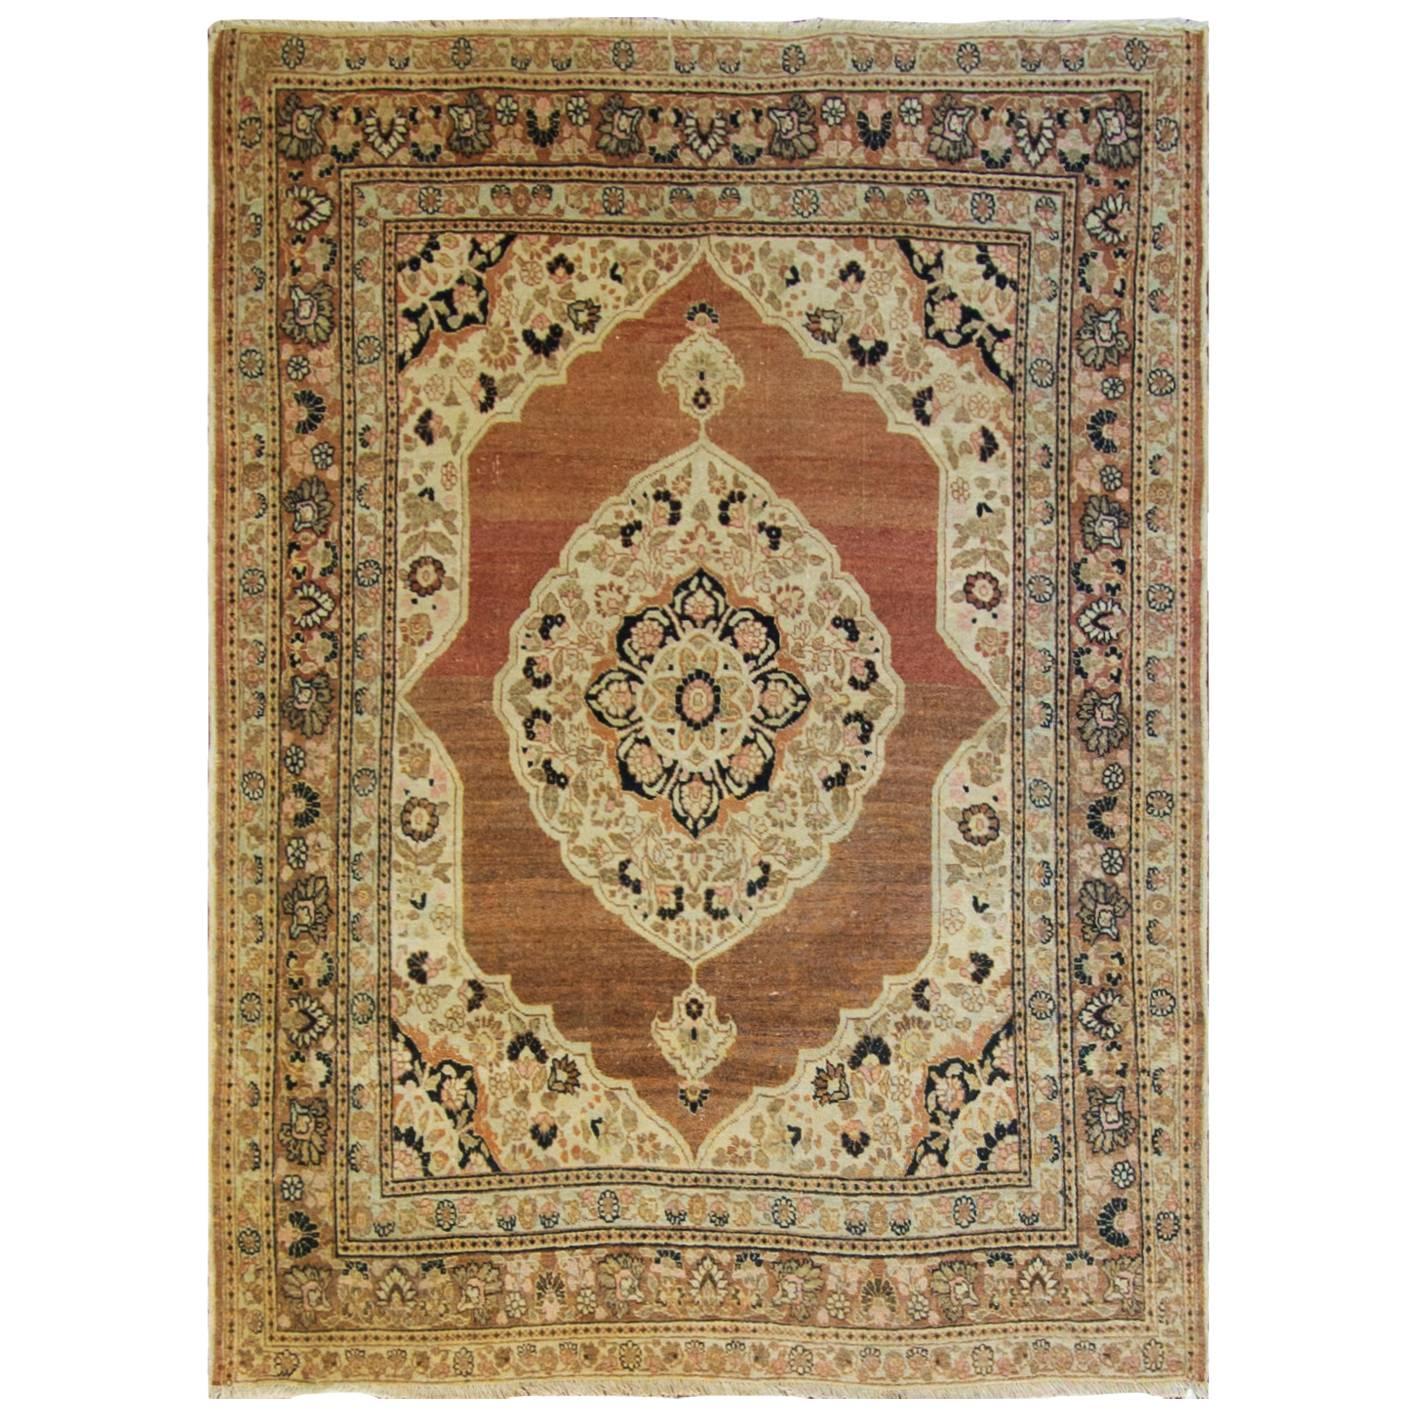 Antique Persian Tabriz Hajji Rug, 4'1" x 5'4" c-1900